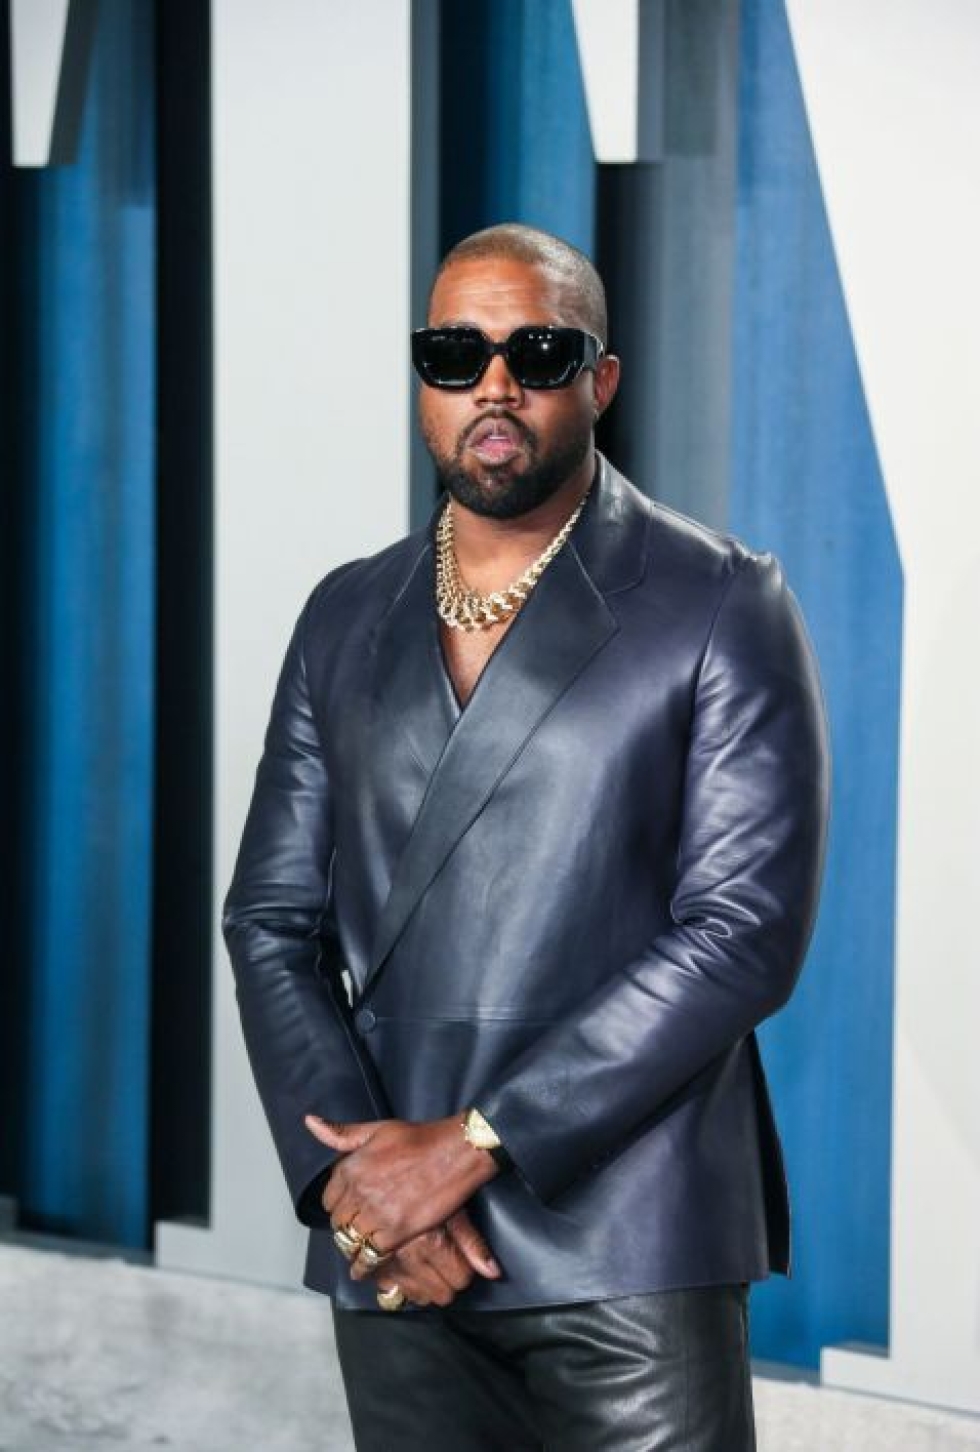 Forbesin mukaan Kanye West on jo vuosia pyytänyt lehteä panemaan hänet miljardöörilistalle mutta   riittäviä todisteita varallisuudesta ei ole ollut. LEHTIKUVA/AFP